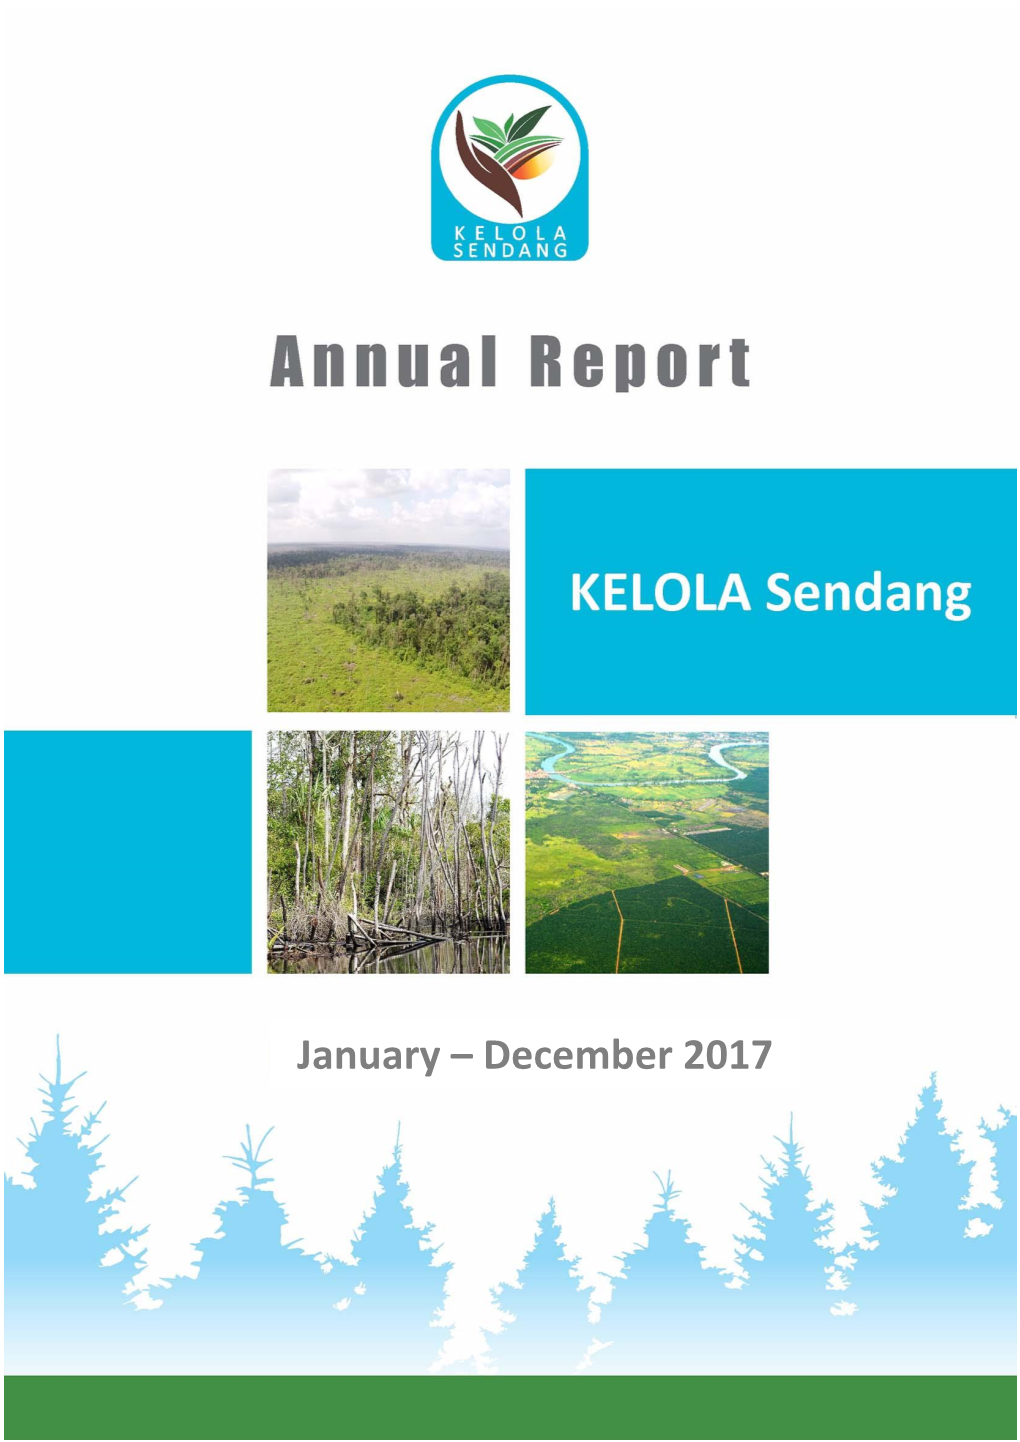 KELOLA Sendang) Annual Report